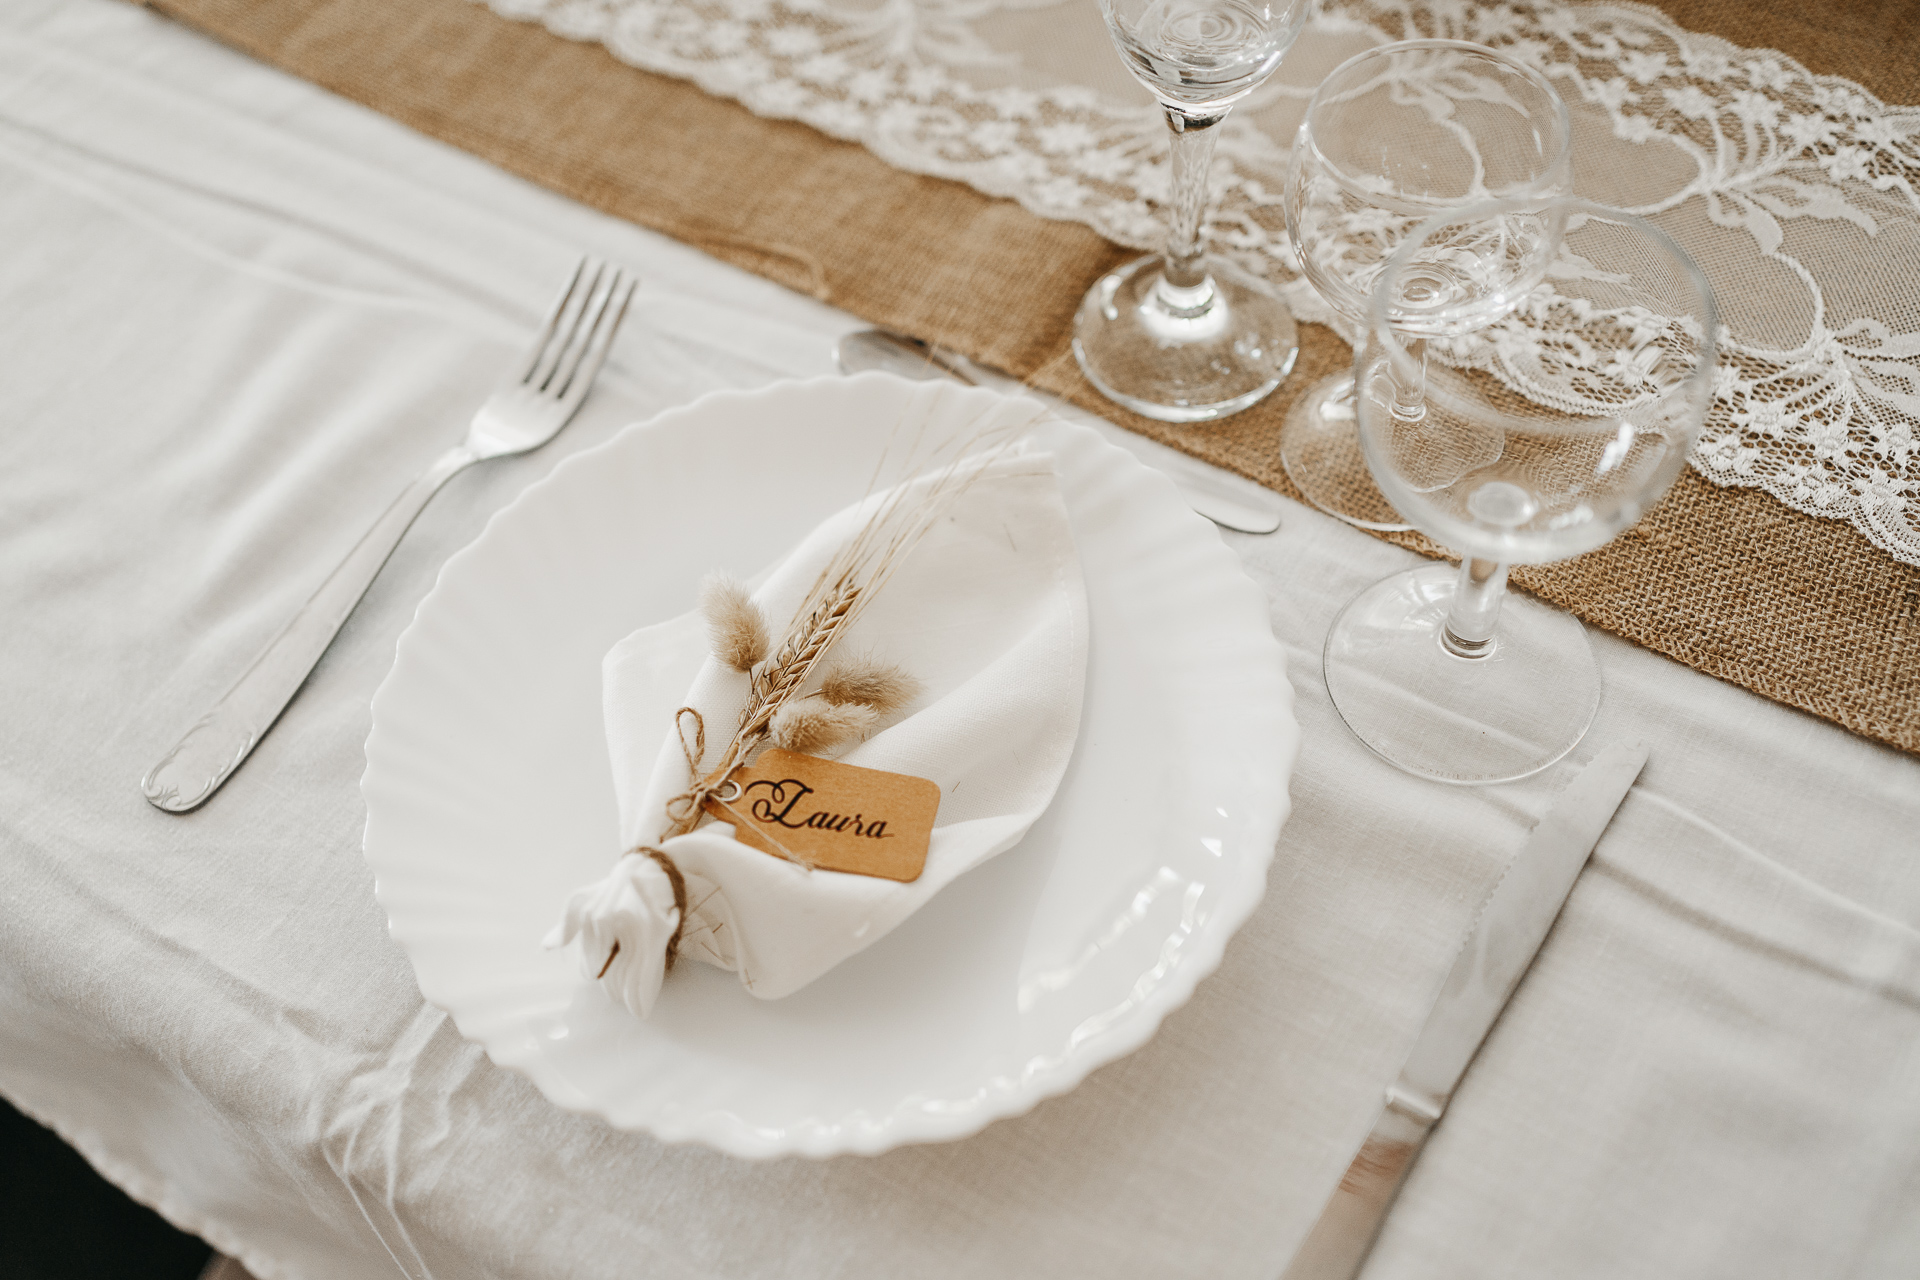 Une table avec une assiette blanche et de l'argenterie.